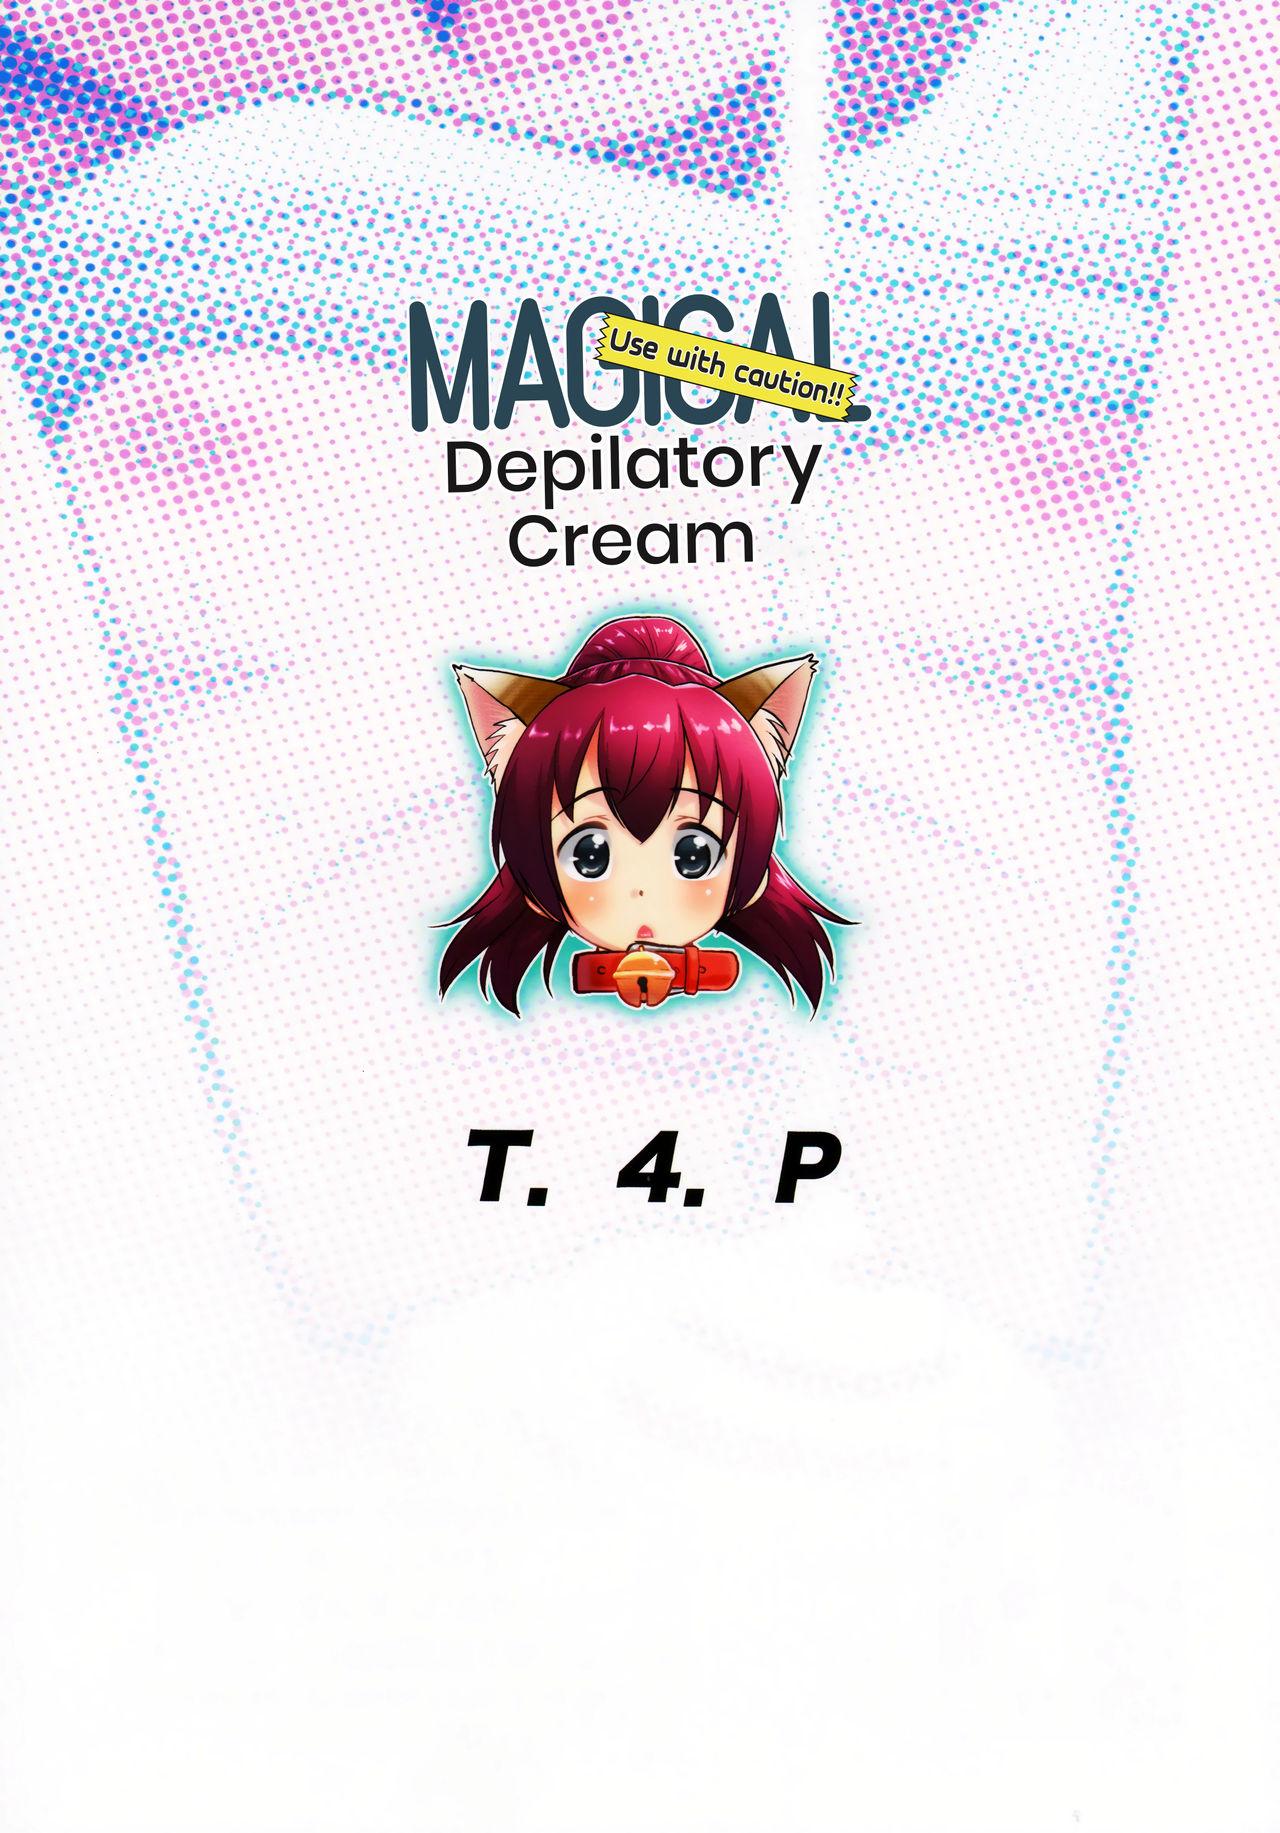 Toriatsukai Chuui!! Mahou no Datsumou Cream. | Use with caution!! Magical depilatory cream 25